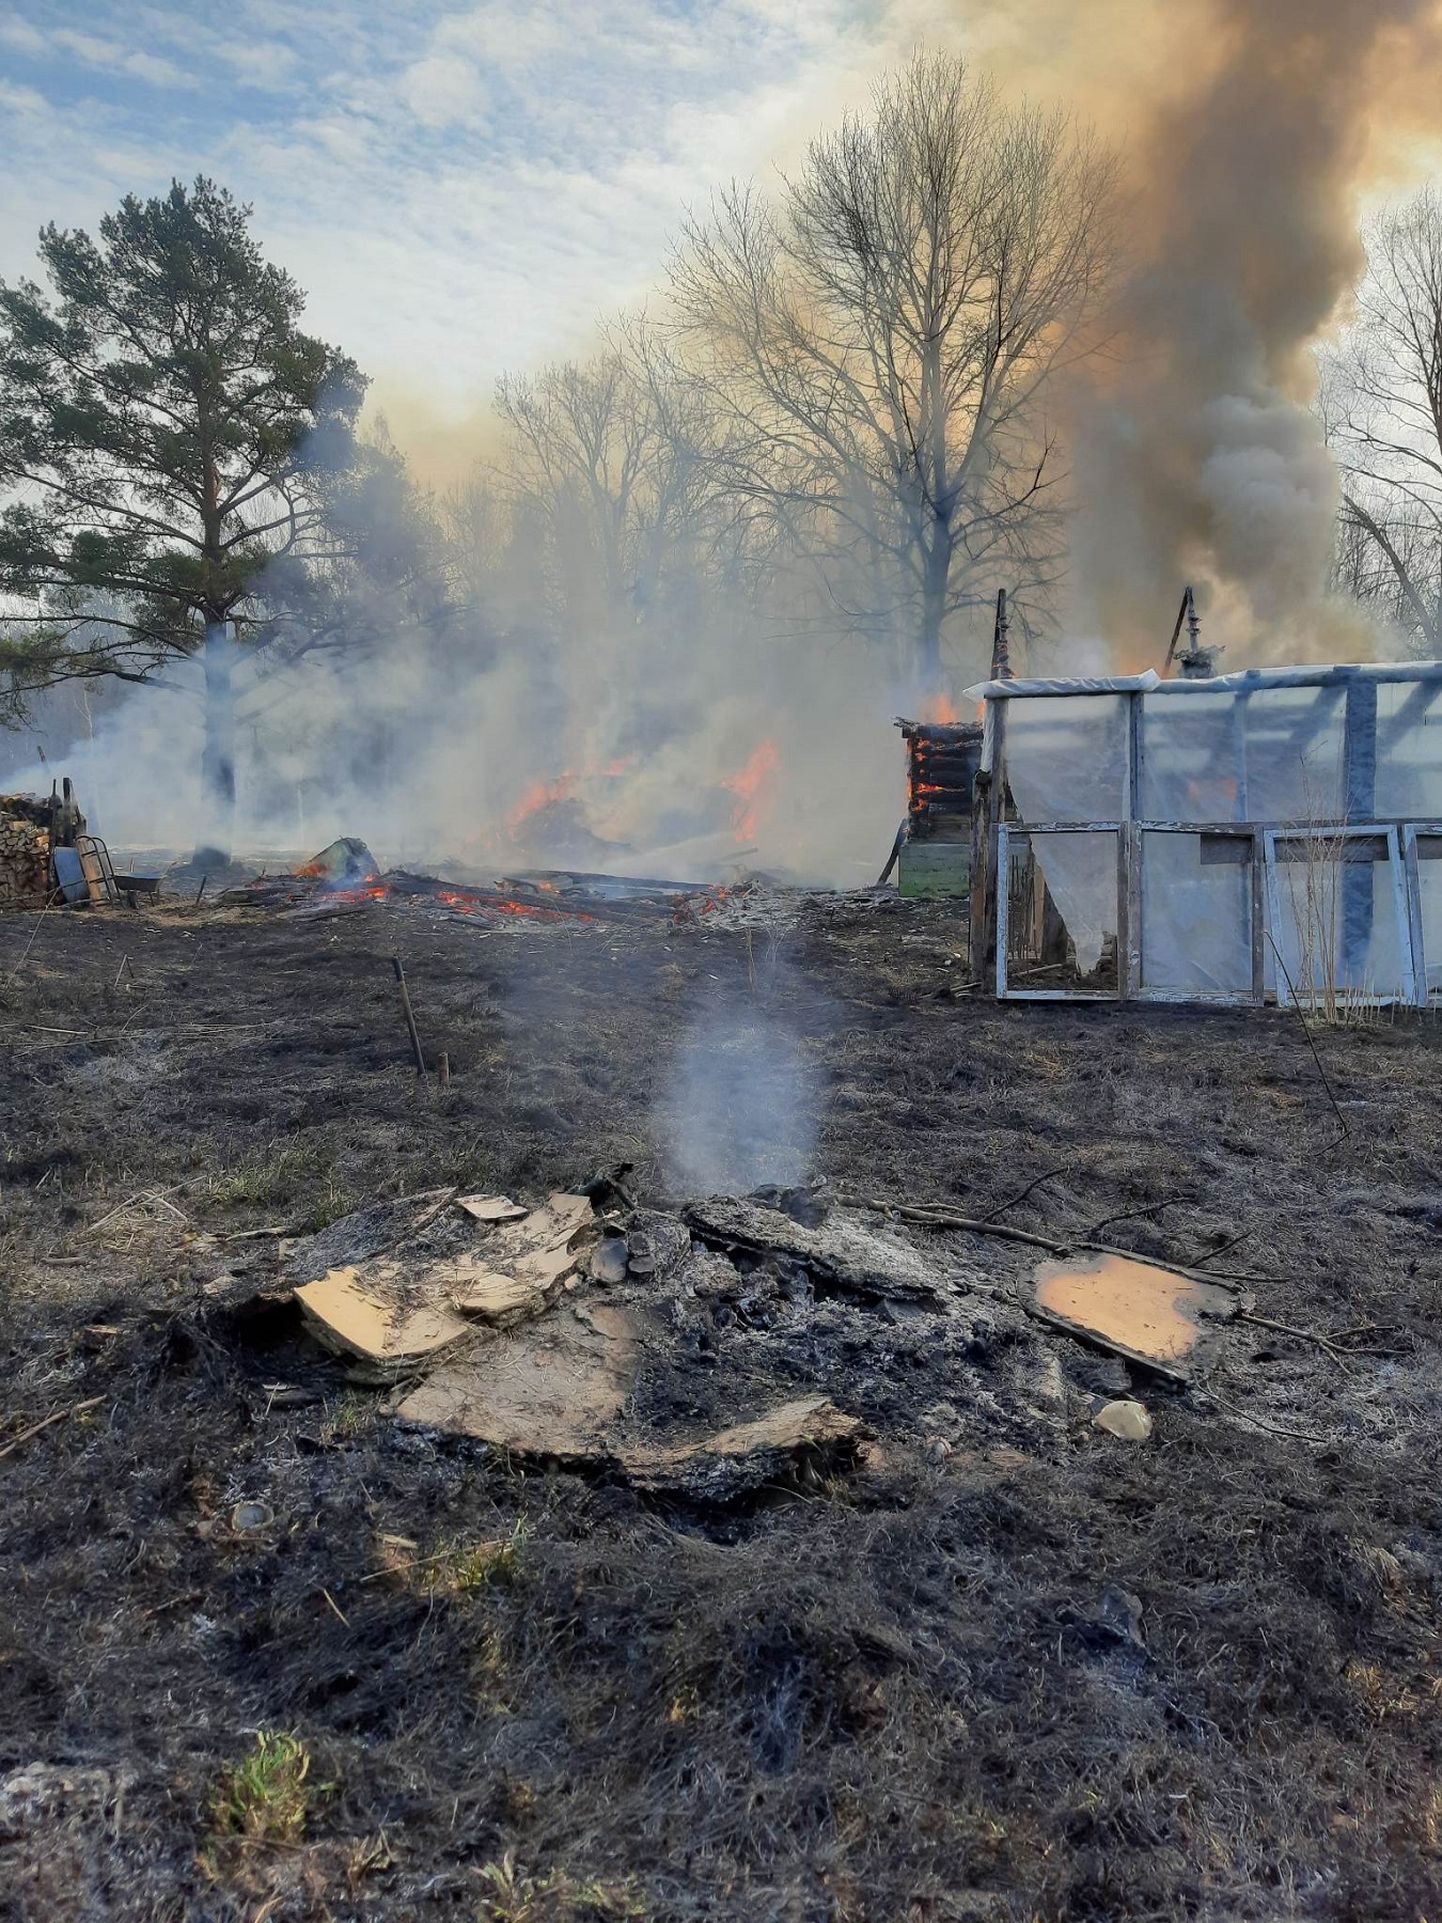 В одной из деревень Алутагузе 17 апреля костер превратился в большой пожар, уничтоживший две хозяйственные постройки.